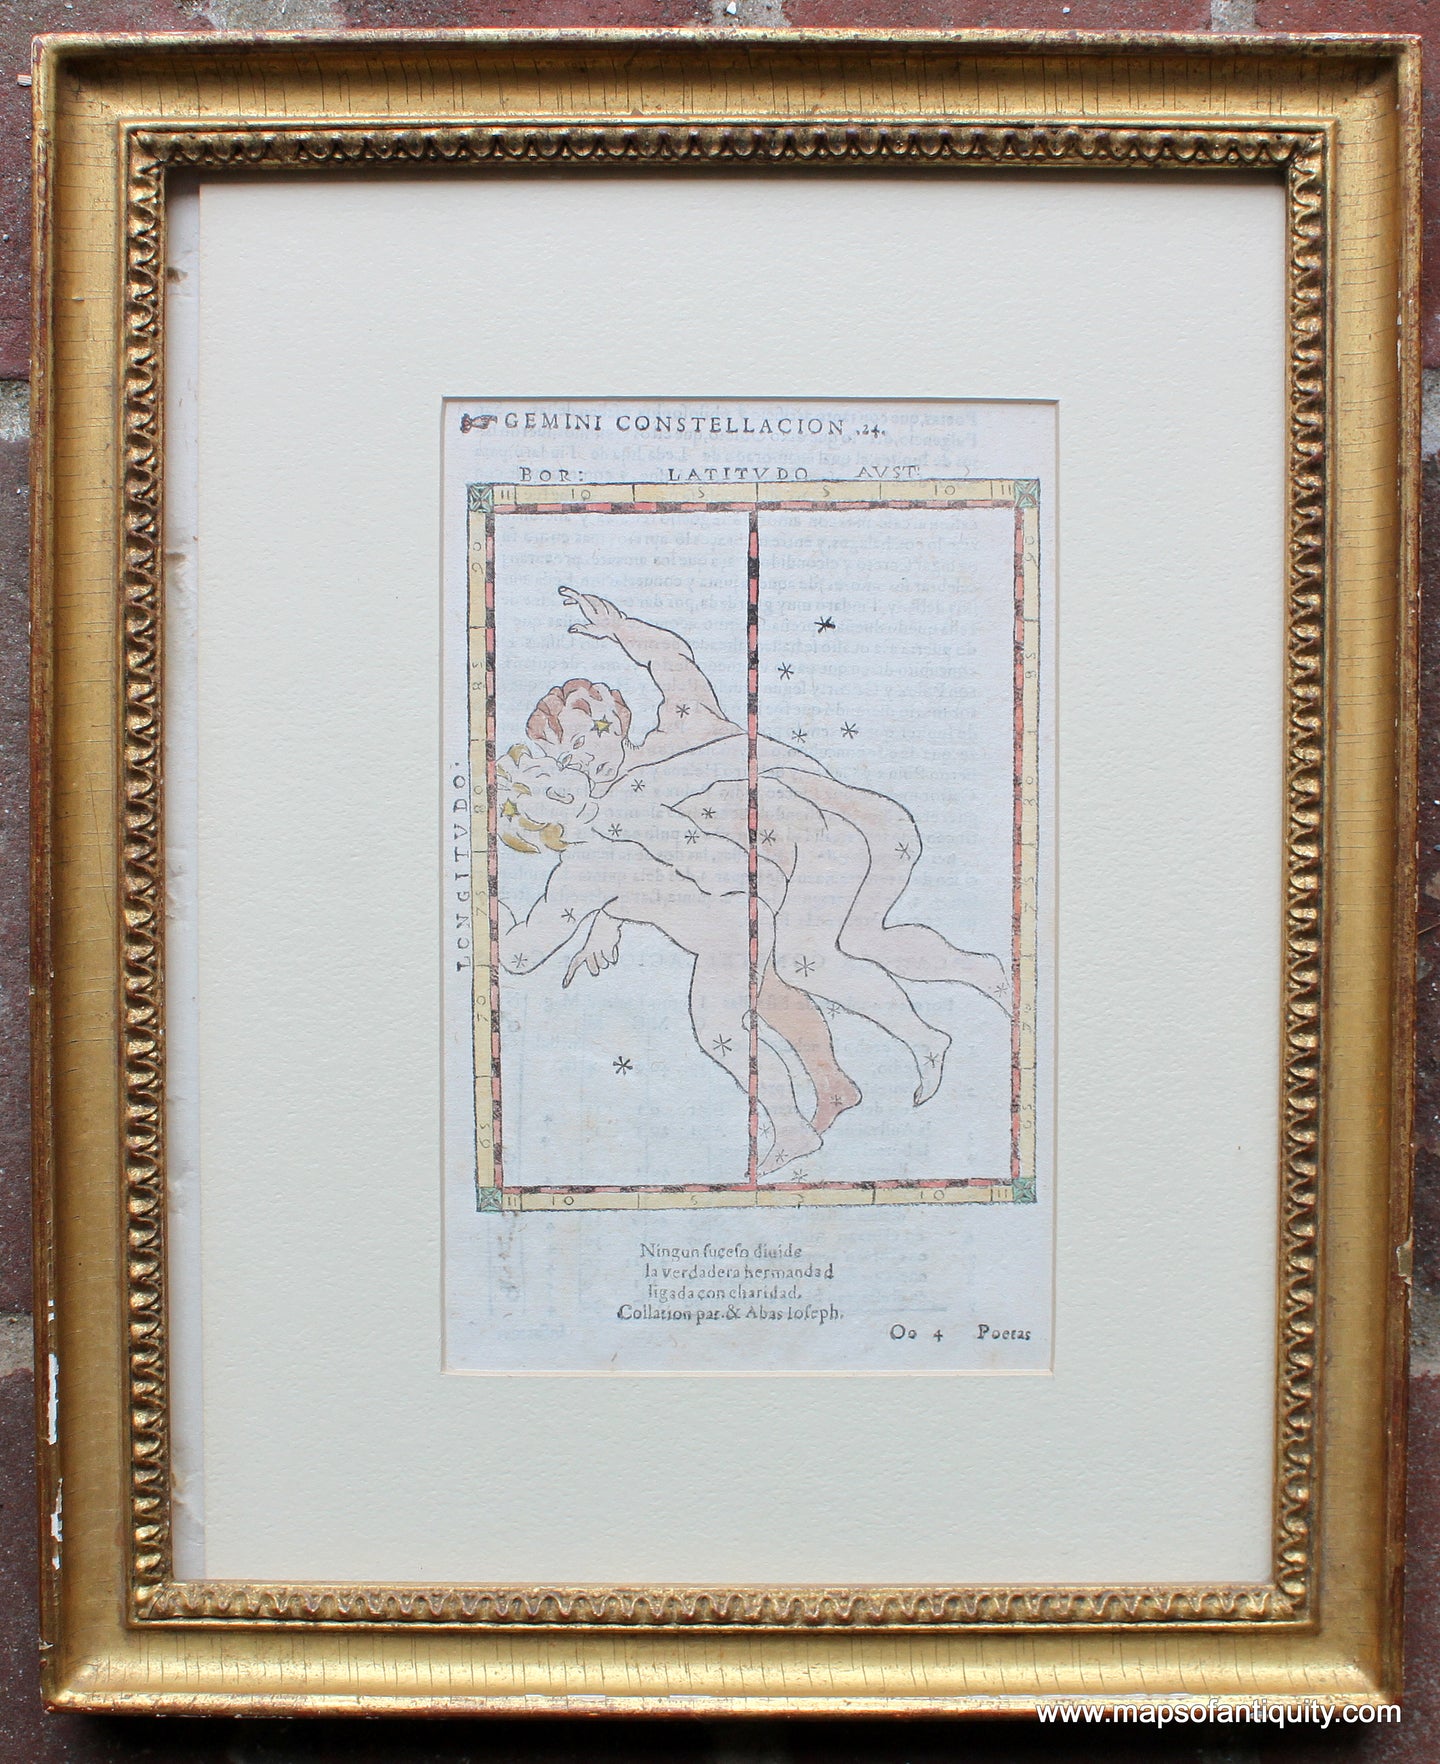 Antique-Print-Gemini-Constellation-17th-century-Maps-of-Antiquity